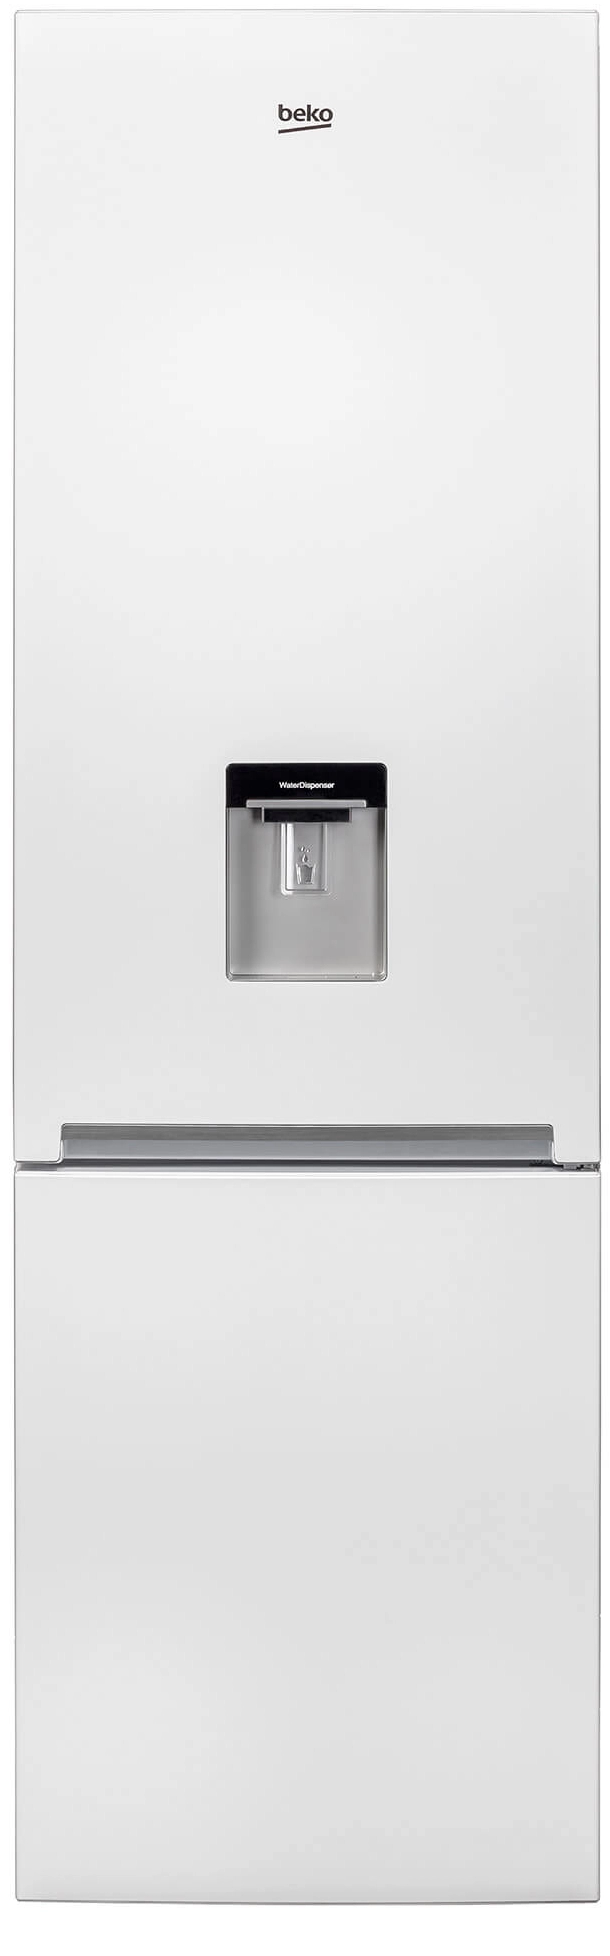 Холодильник с нижней морозильной камерой Beko RCSA400K20DW, 377 л, 201 см, A+, Белый